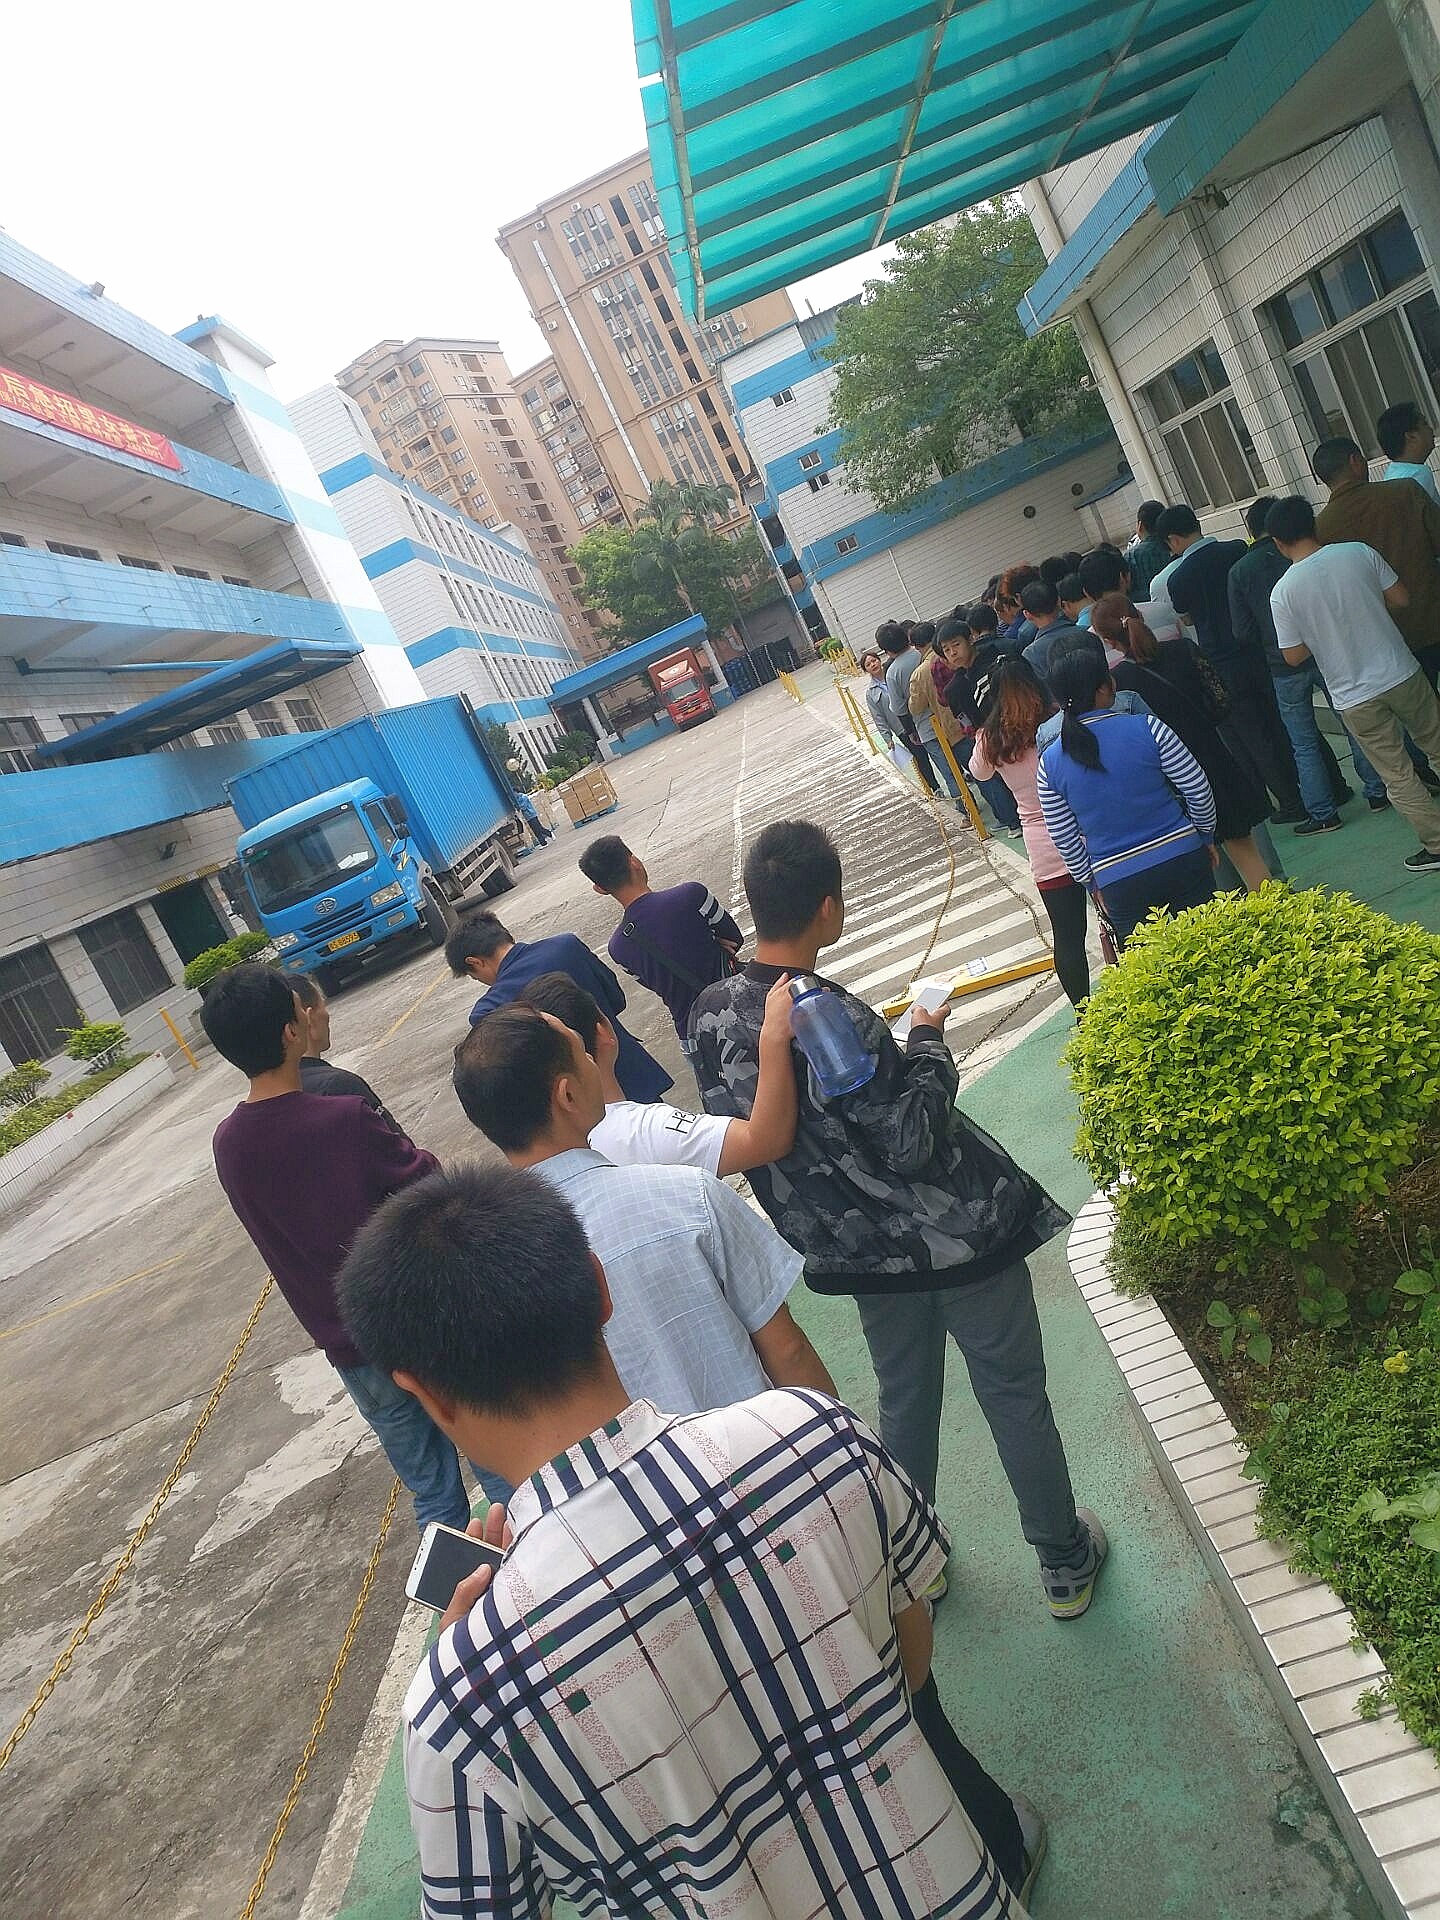 星期天 深圳某工厂门口,求职者排起了长队,只为等待工厂的面试